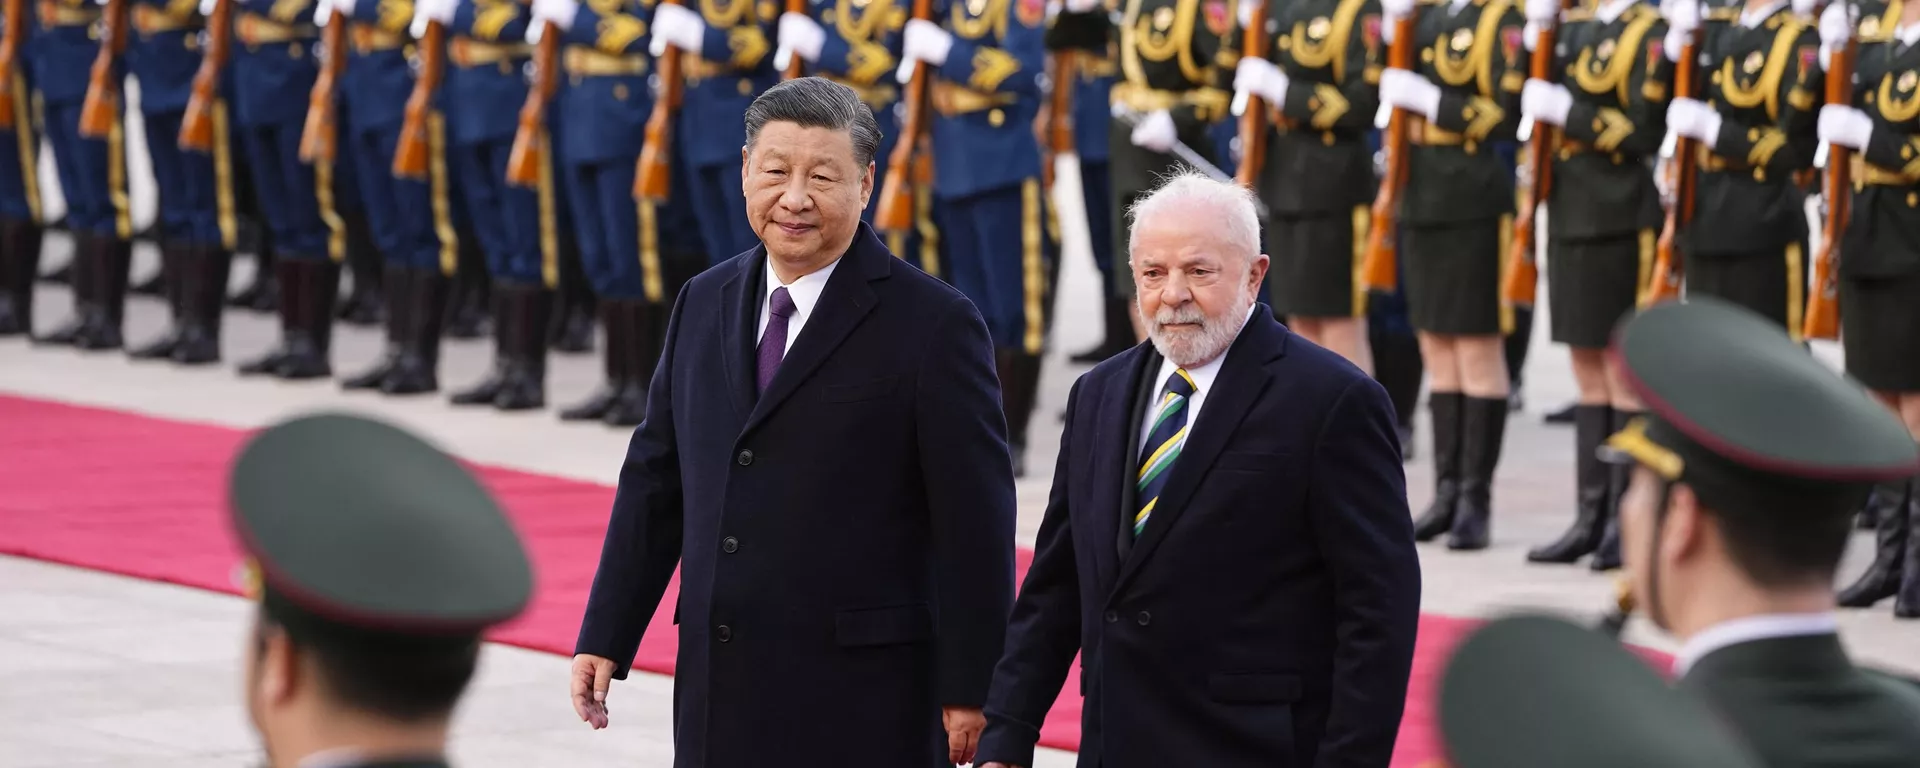 Brezilya Devlet Başkanı Lula da Silva, Pekin'deki Büyük Halk Salonu'nda Çin Devlet Başkanı Şi Cinping tarafından kırmızı halı serilerek askeri törenle karşılanırken - Sputnik Türkiye, 1920, 14.04.2023